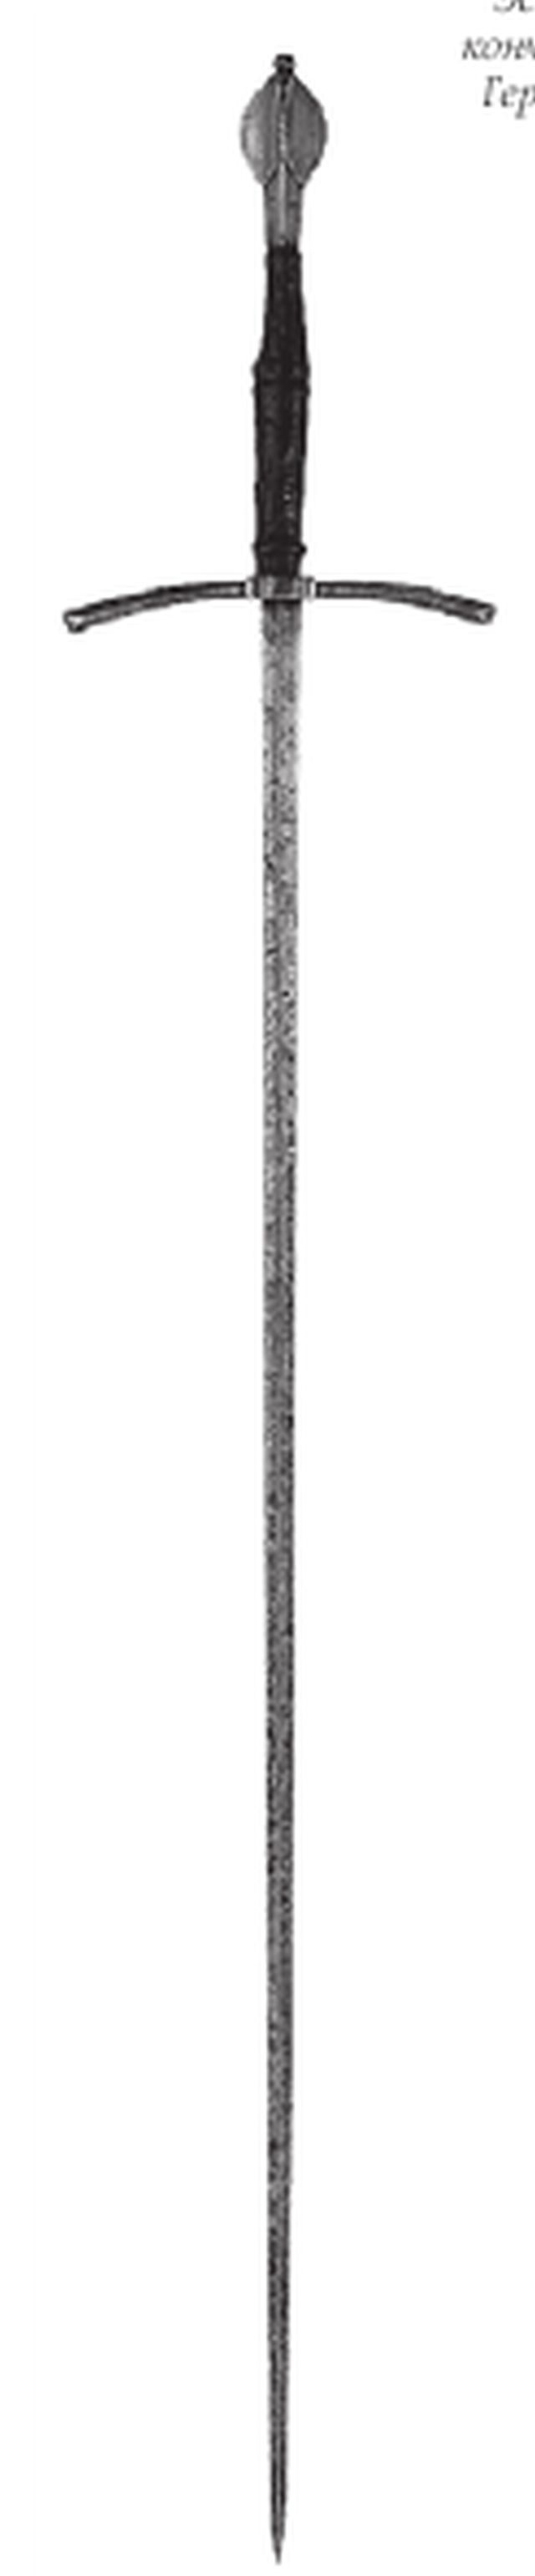 Эсток(колющий меч, кончар, панцерштрехер). Германия, начало XVI в.